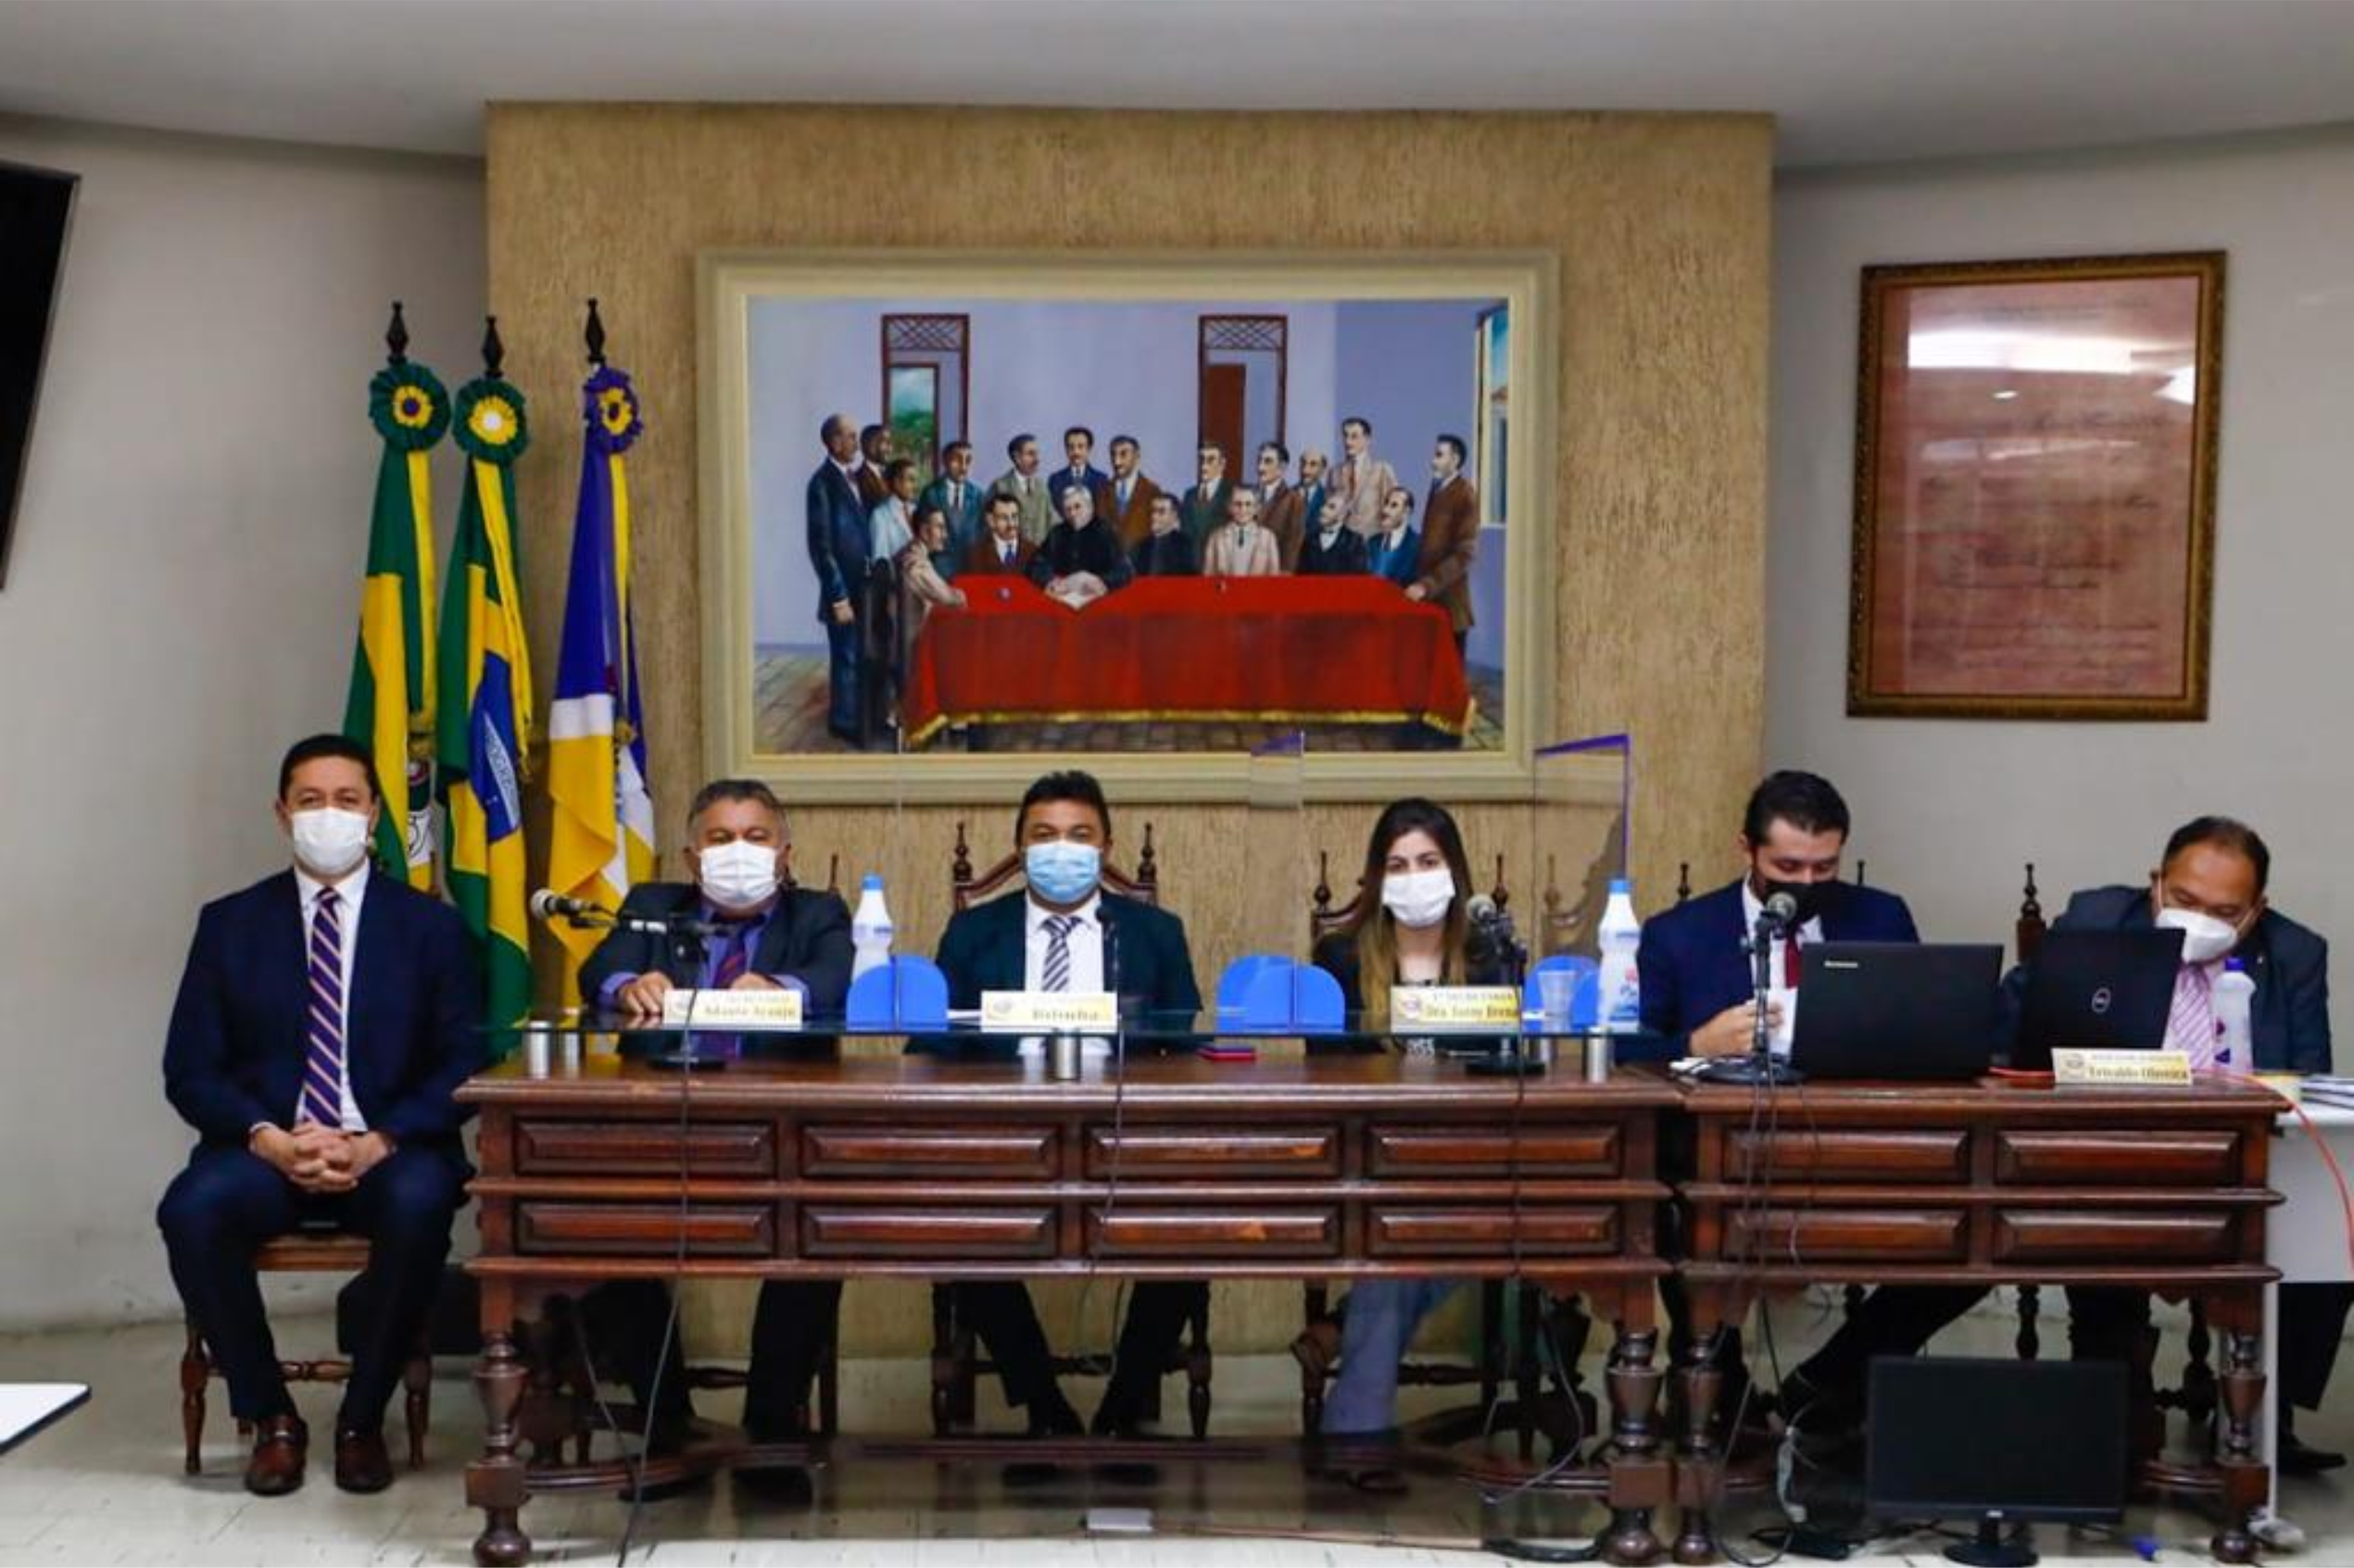 Photo of Câmara de Juazeiro do Norte reinicia trabalhos legislativos com a presença do chefe do executivo e vice